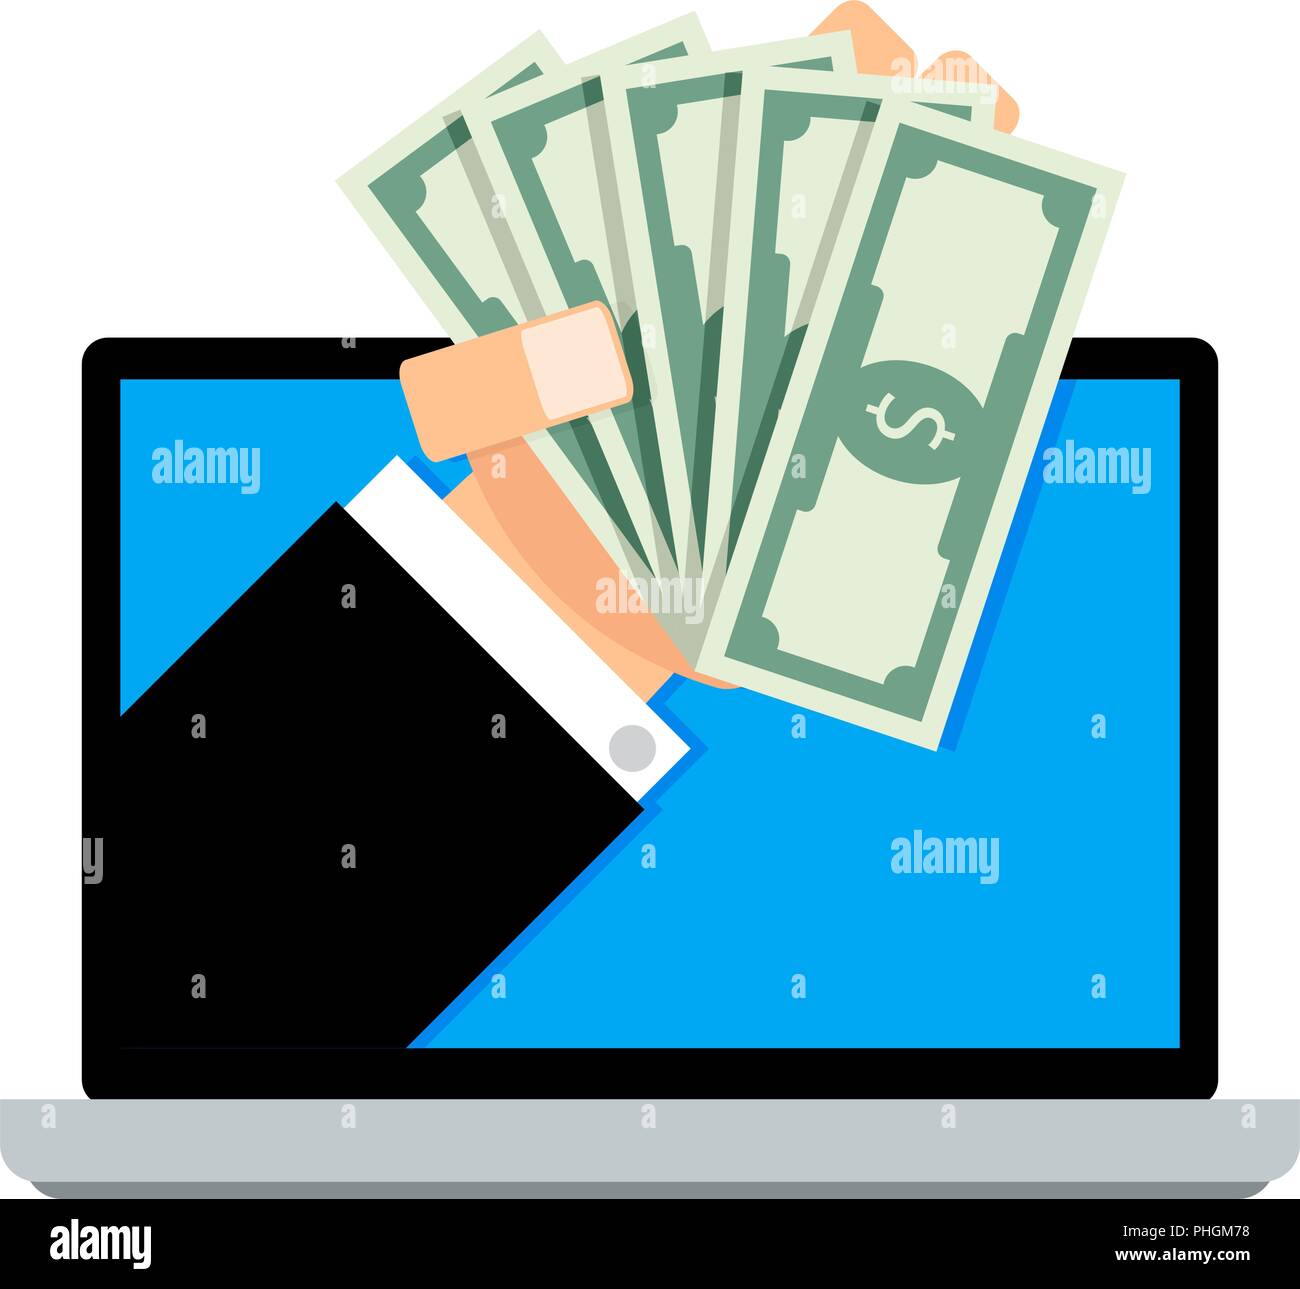 Stipendio online, transazione finanziaria delle banconote dal laptop. Vettore di entrate finanziarie in mano, il prestito in linea e la compensazione di illustrazione delle banconote Illustrazione Vettoriale